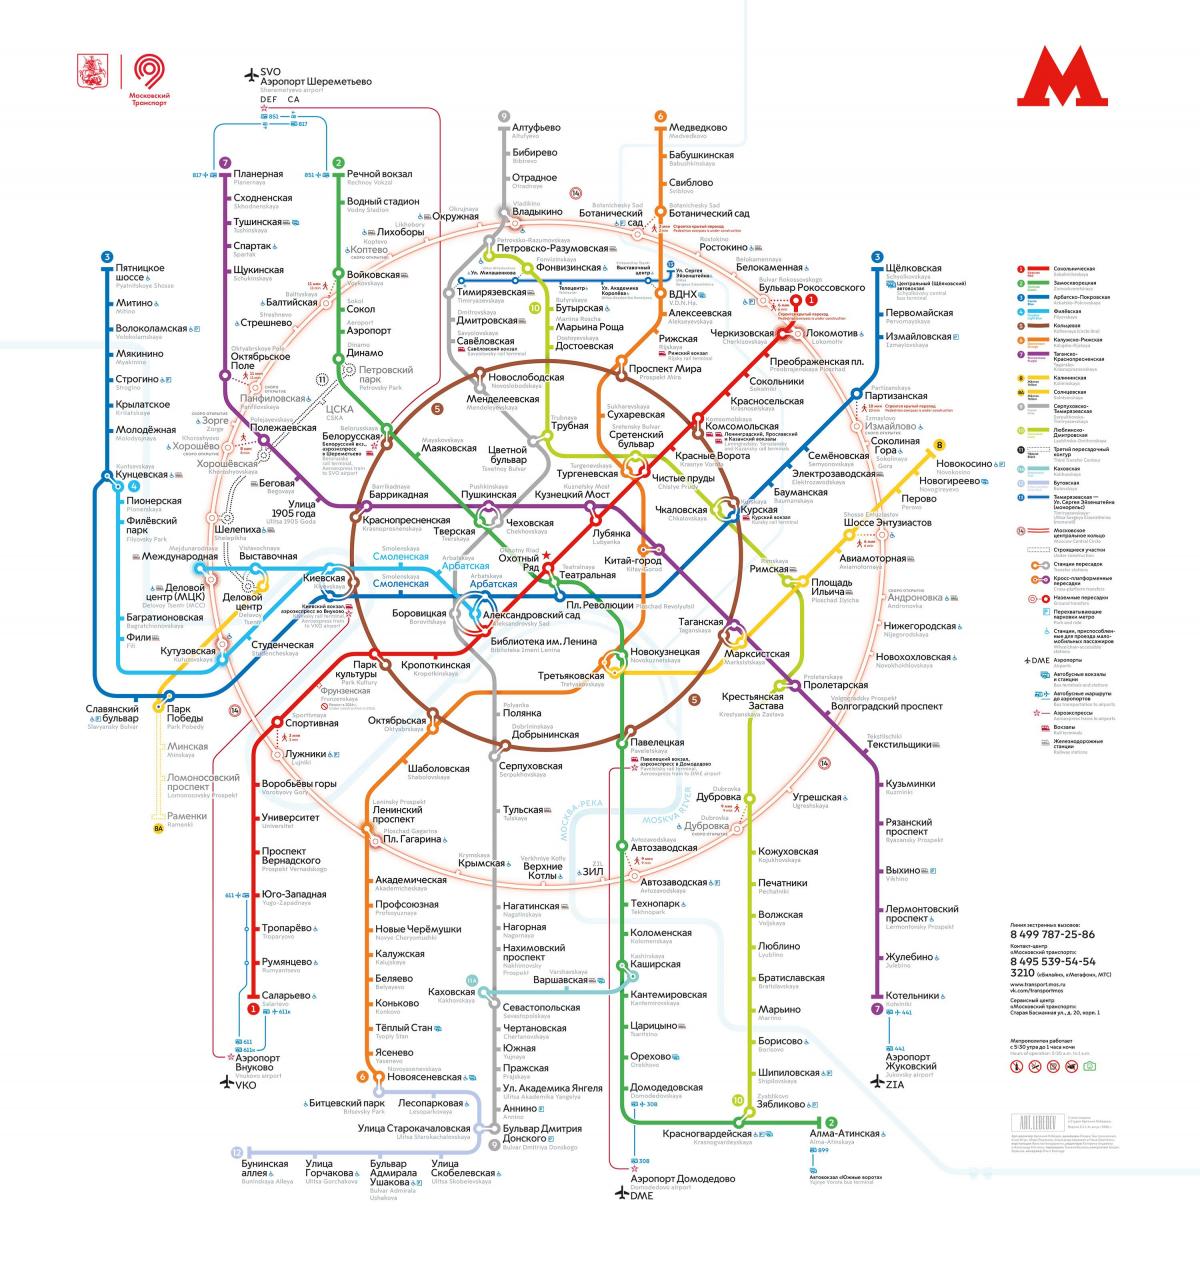 Moskou metro kaart